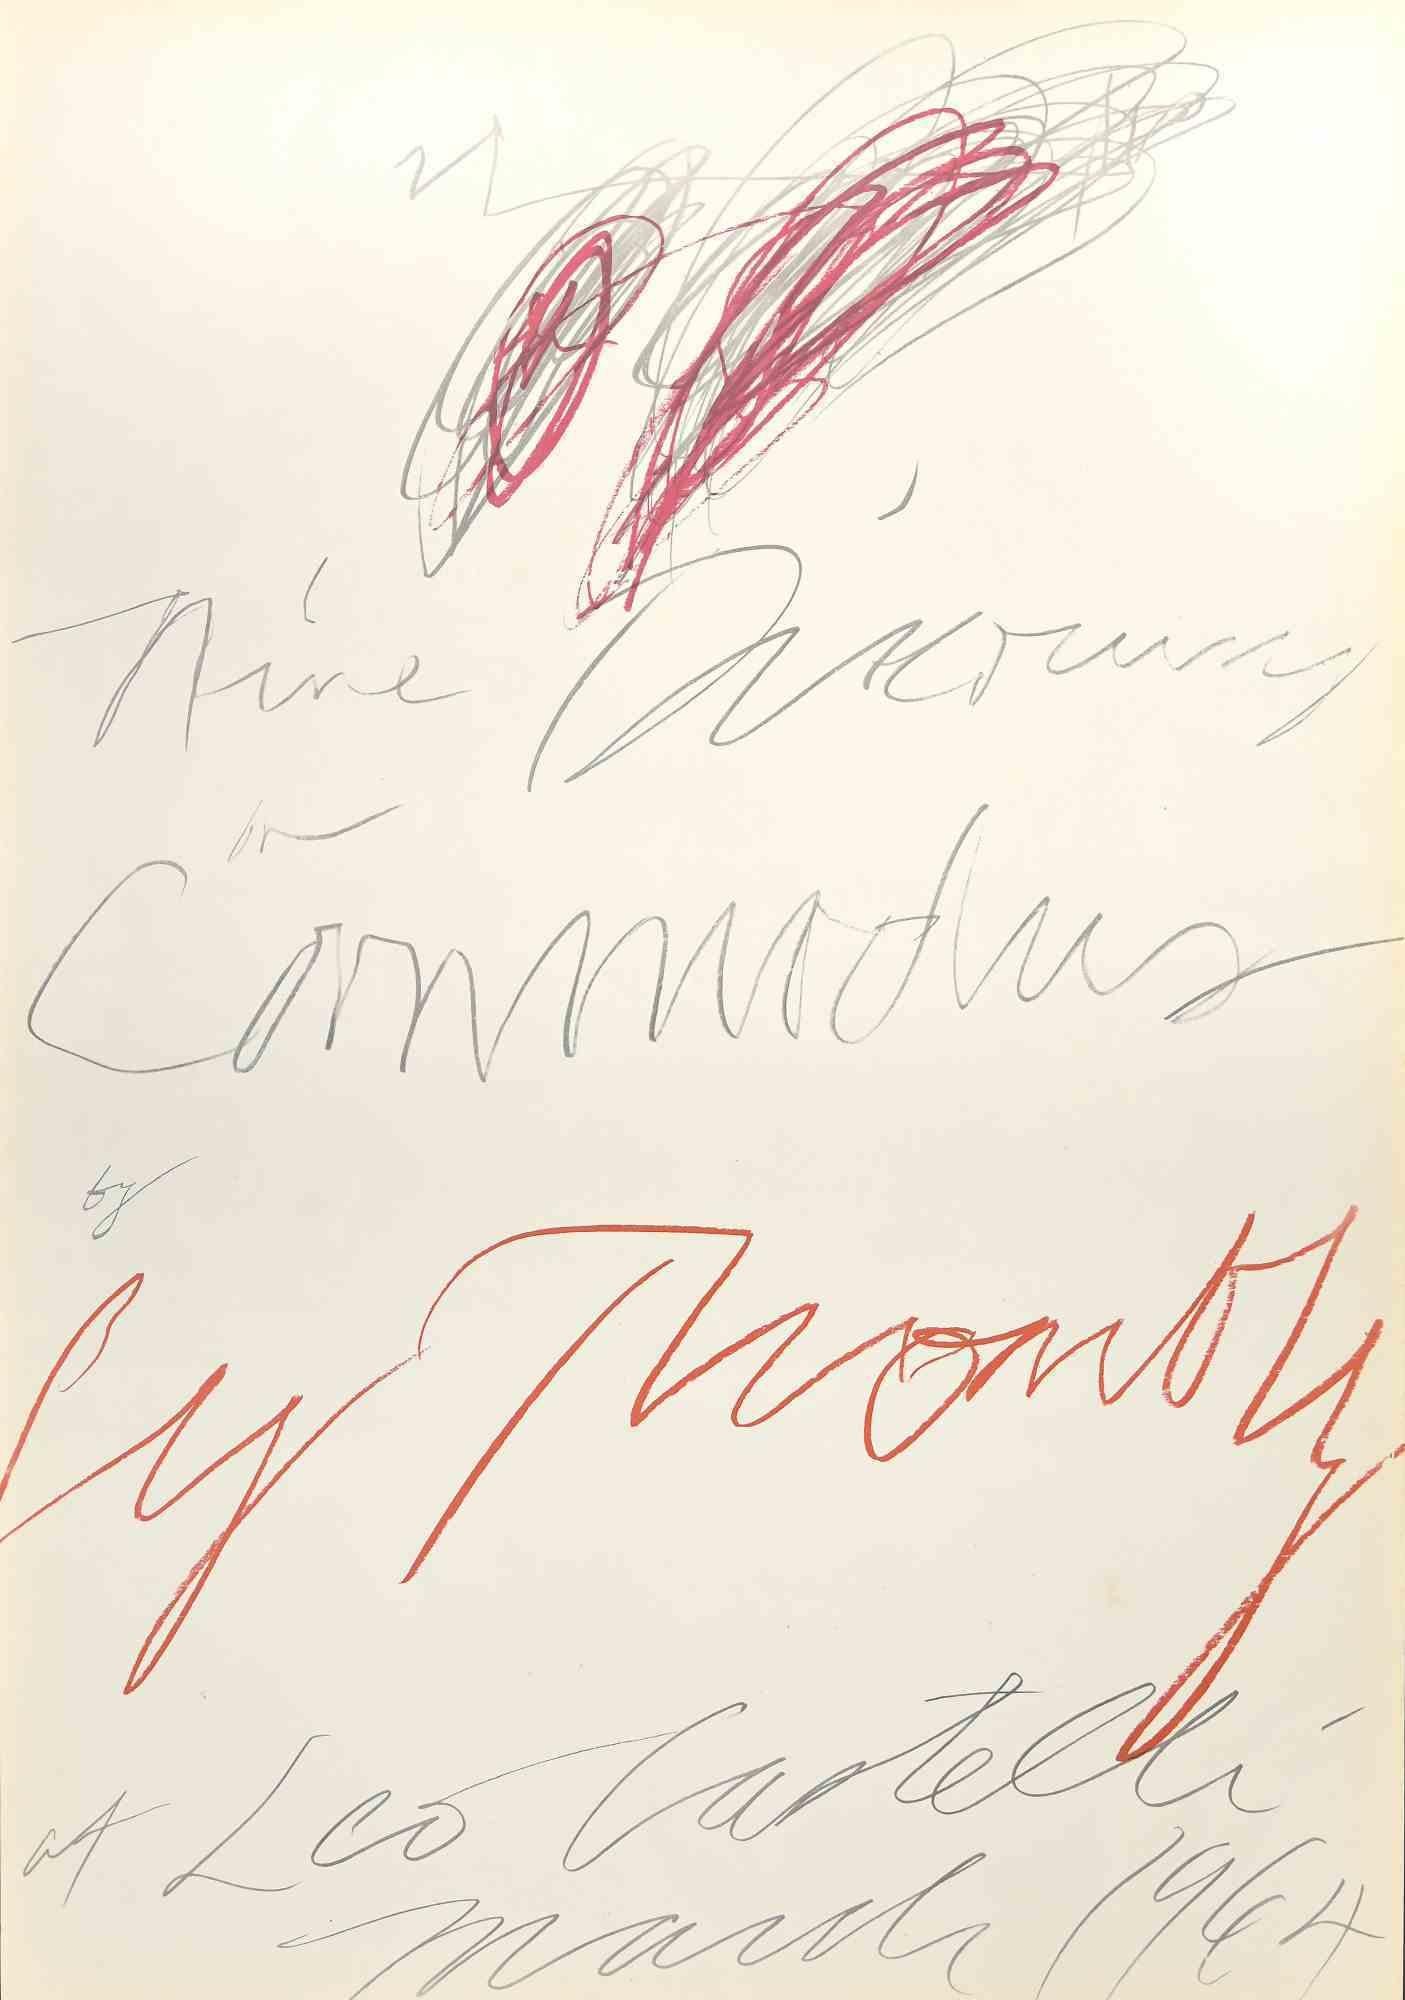 Twombly Exhibition - Leo Castelli Gallery ist eine farbige Lithographie aus dem Jahr 1964.

Dieses Kunstwerk wurde anlässlich der Ausstellung von Cy Twombly in der Leo Castelly Gallery in New York im Jahr 1964 realisiert.

Die Lithographie stellt